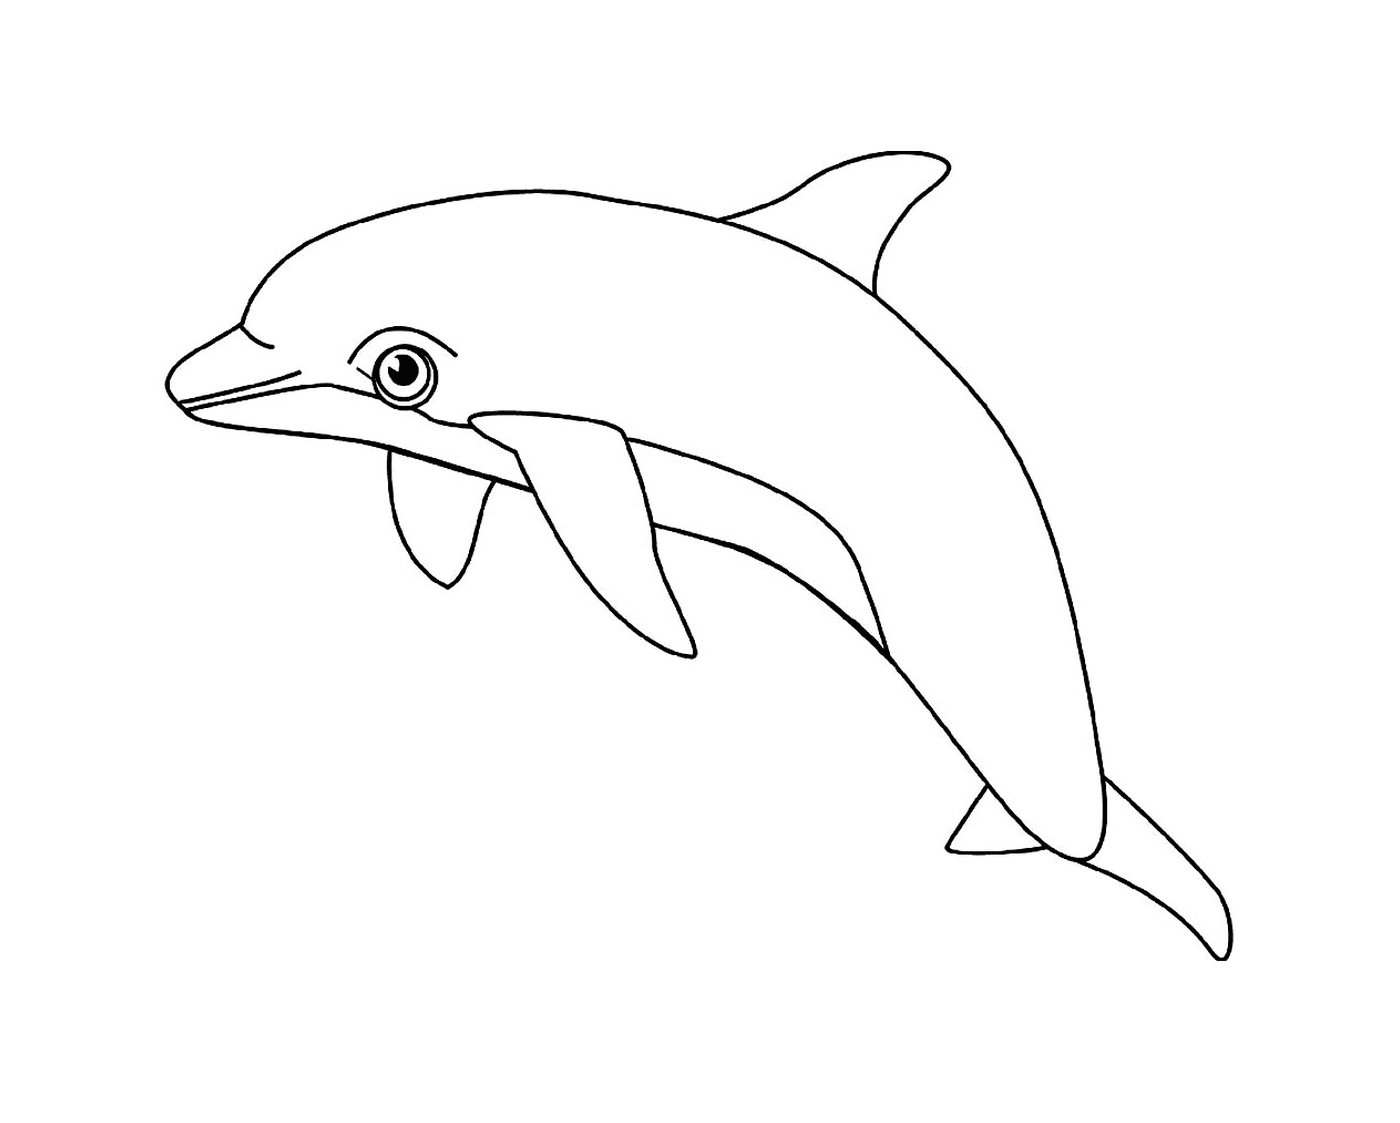  an aquatic dolphin 